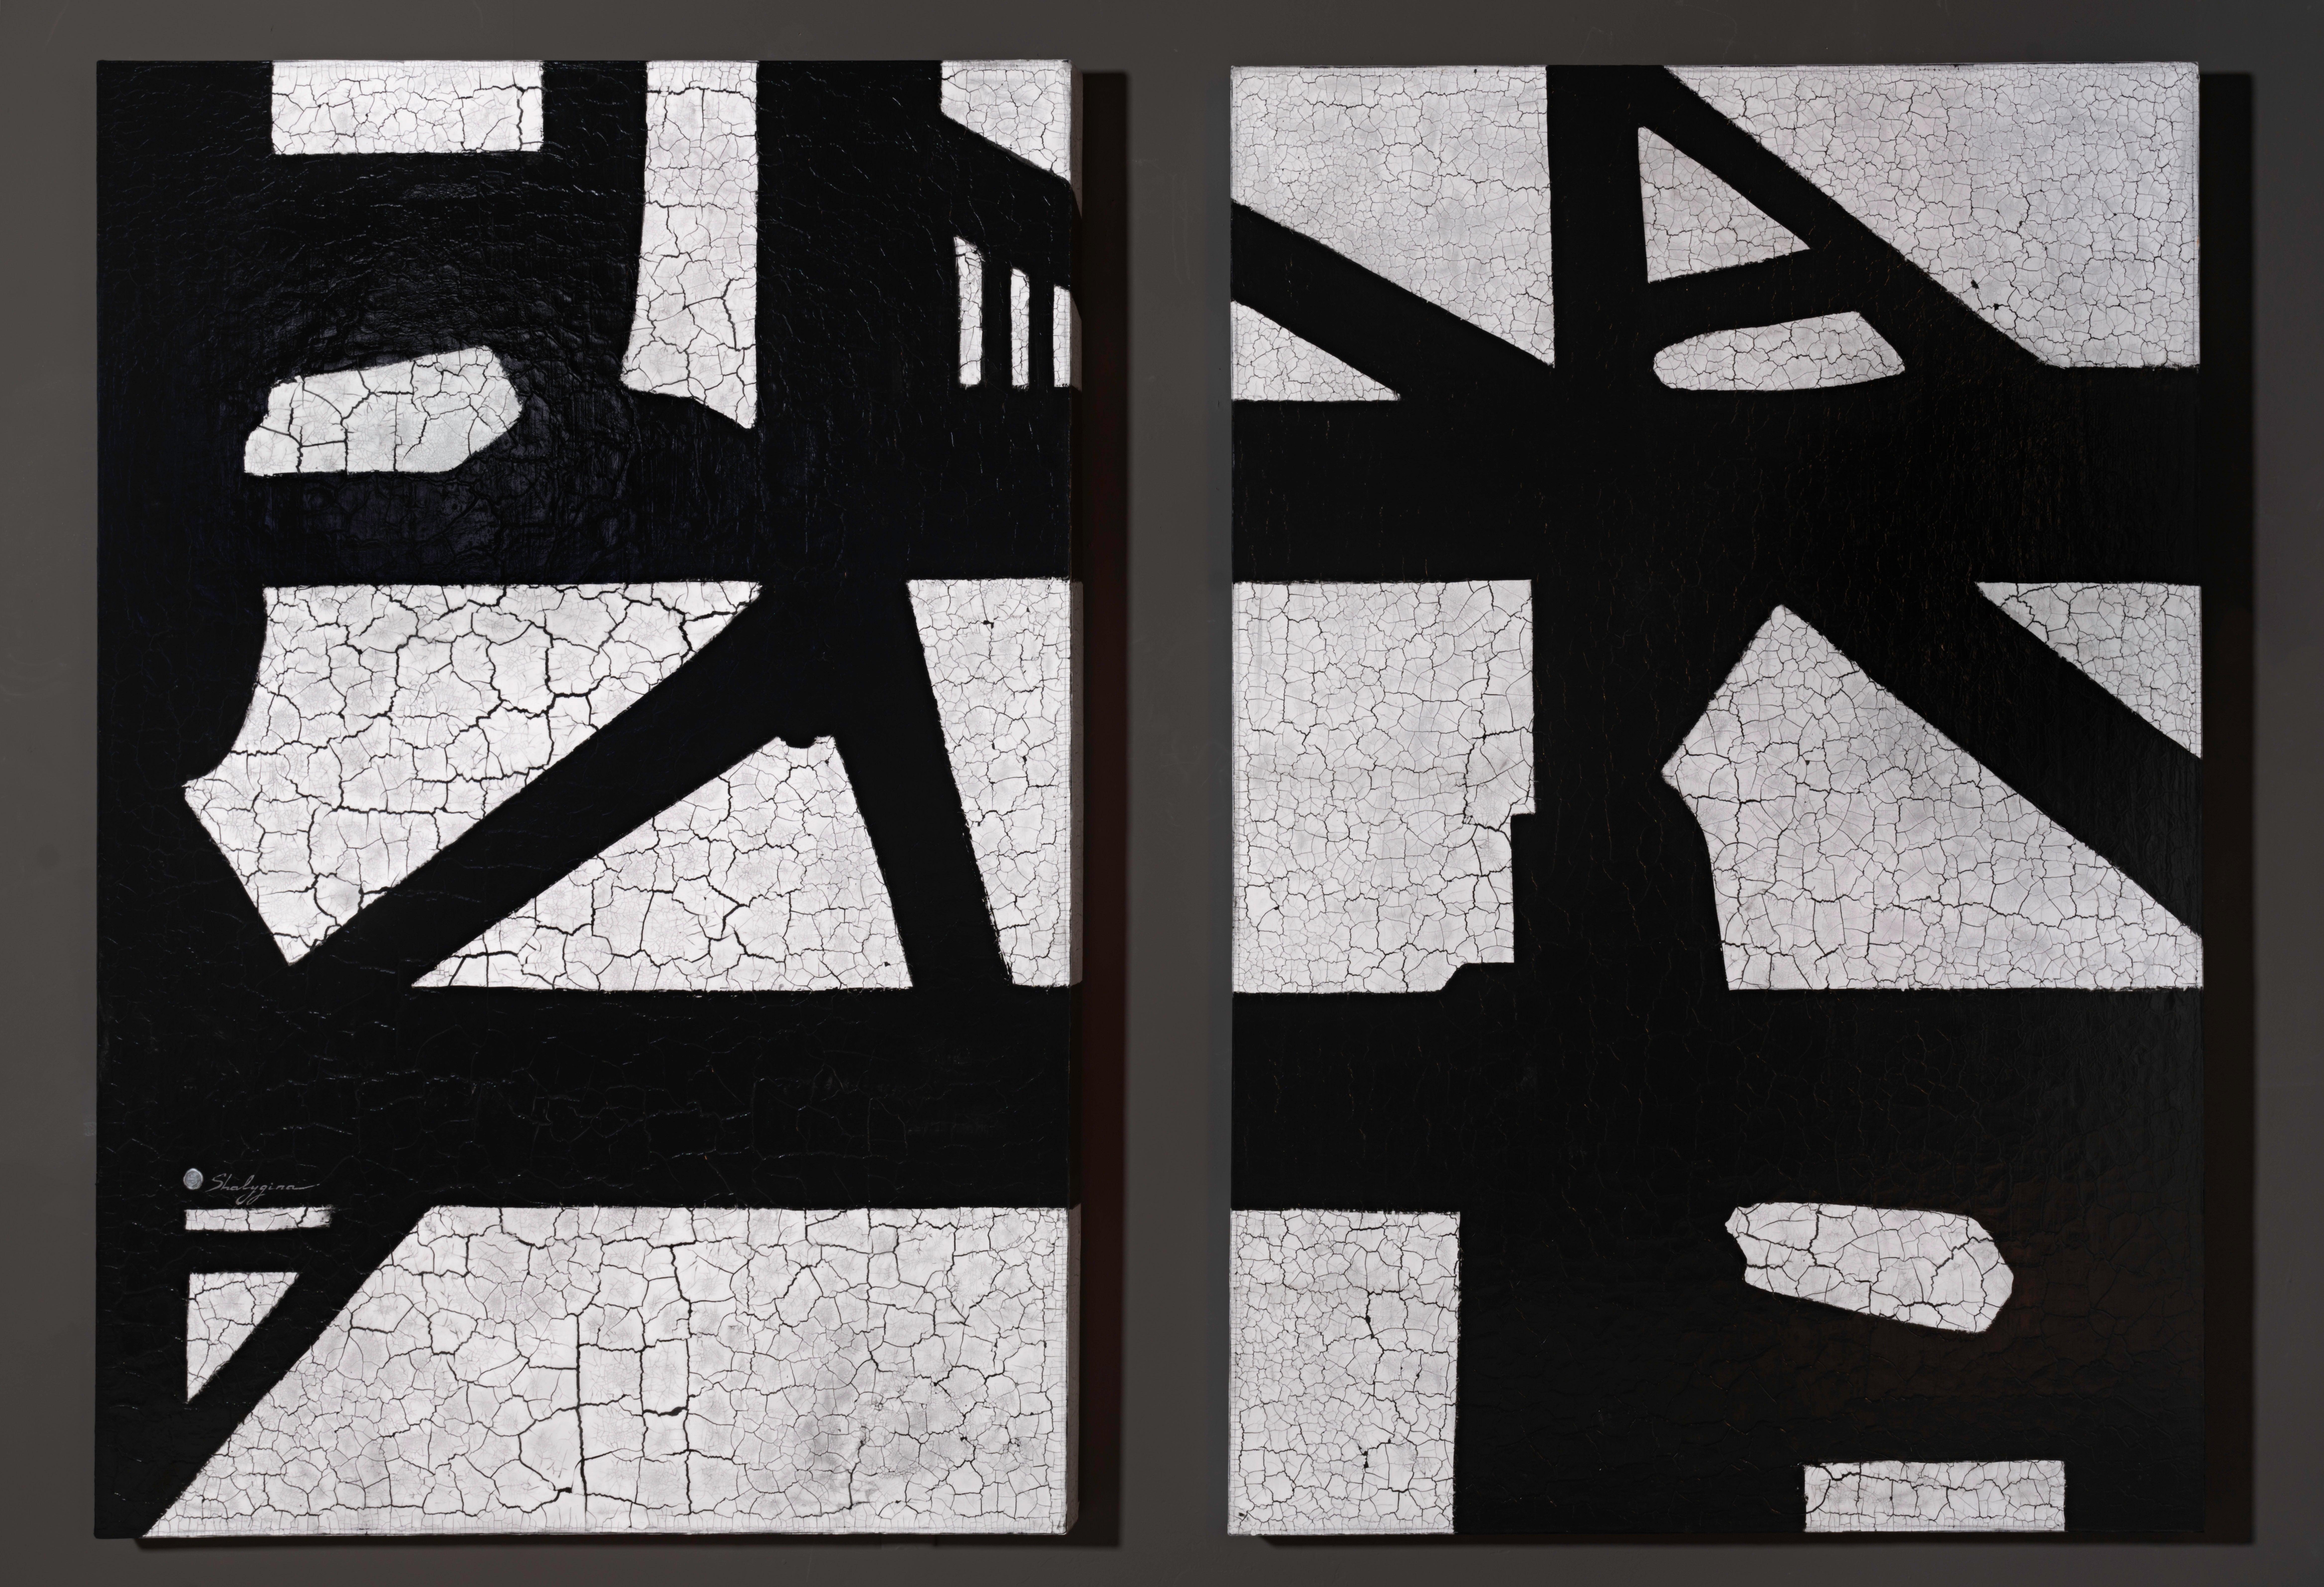 Diptyque contemporain minimaliste en noir et blanc texturé, inspiré de Franz Kline